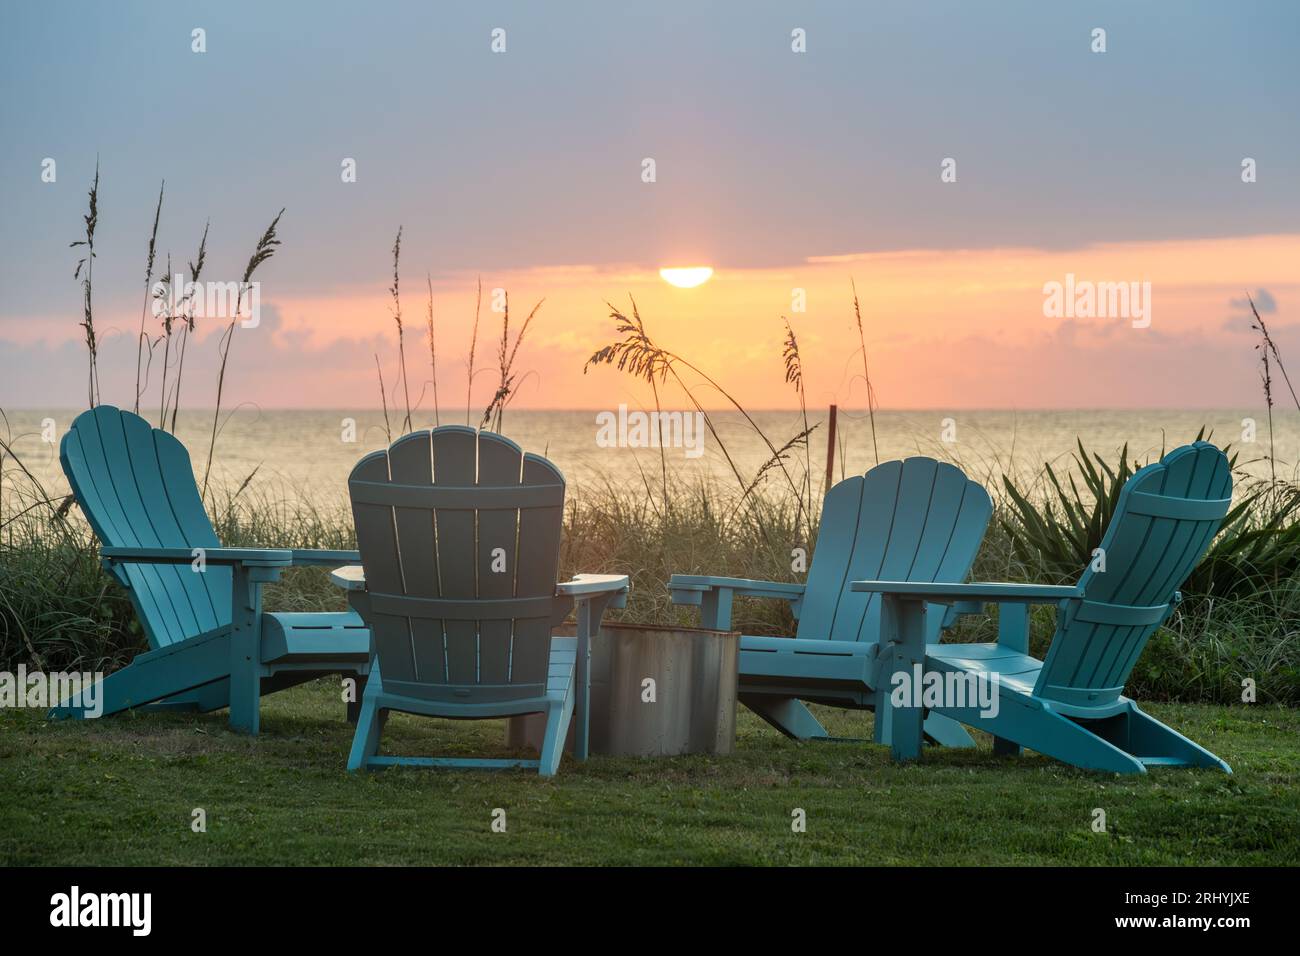 Farbenfroher Sonnenaufgangsblick auf Adirondack-Stühle um eine Feuerstelle an einem Strandhaus am Meer in Ponte Vedra Beach, Florida, nördlich von St. Augustine. Stockfoto